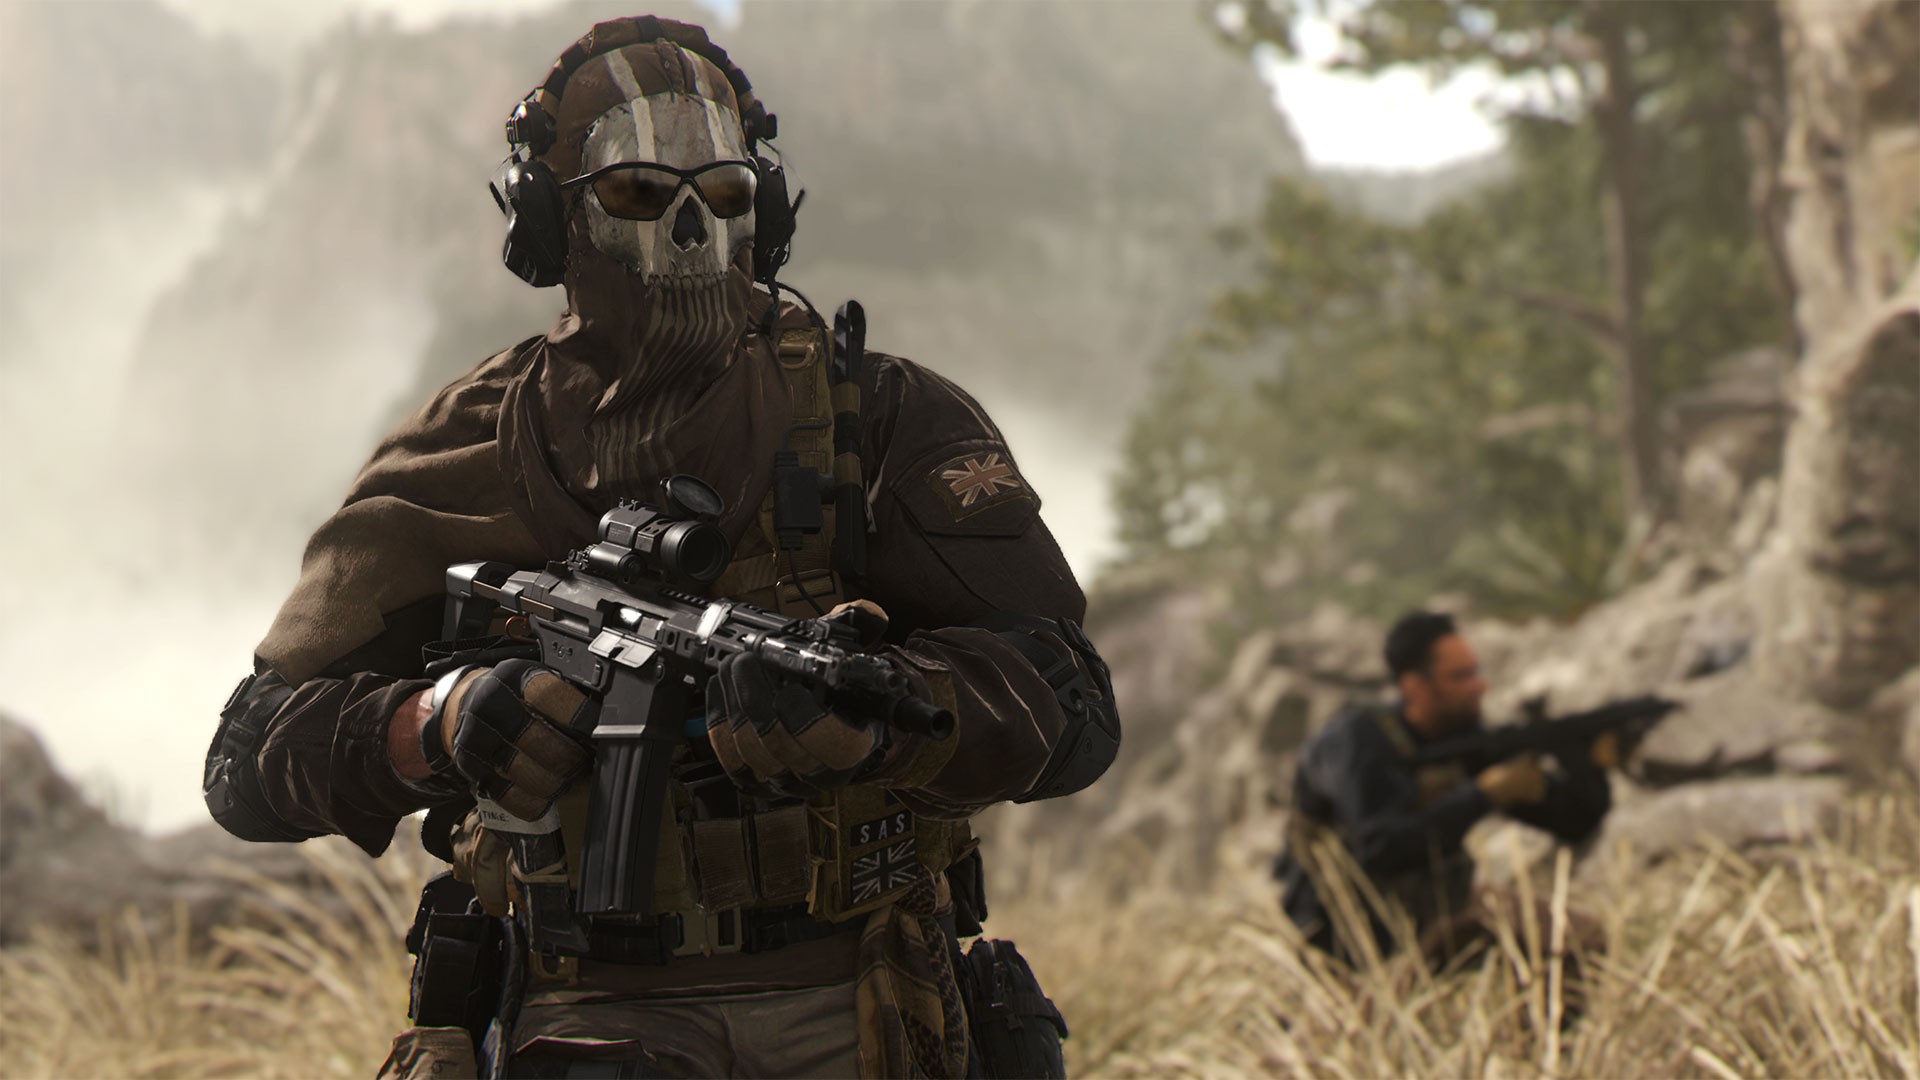 Mídia física de Call of Duty: Modern Warfare 2 de PS5 não inclui o jogo